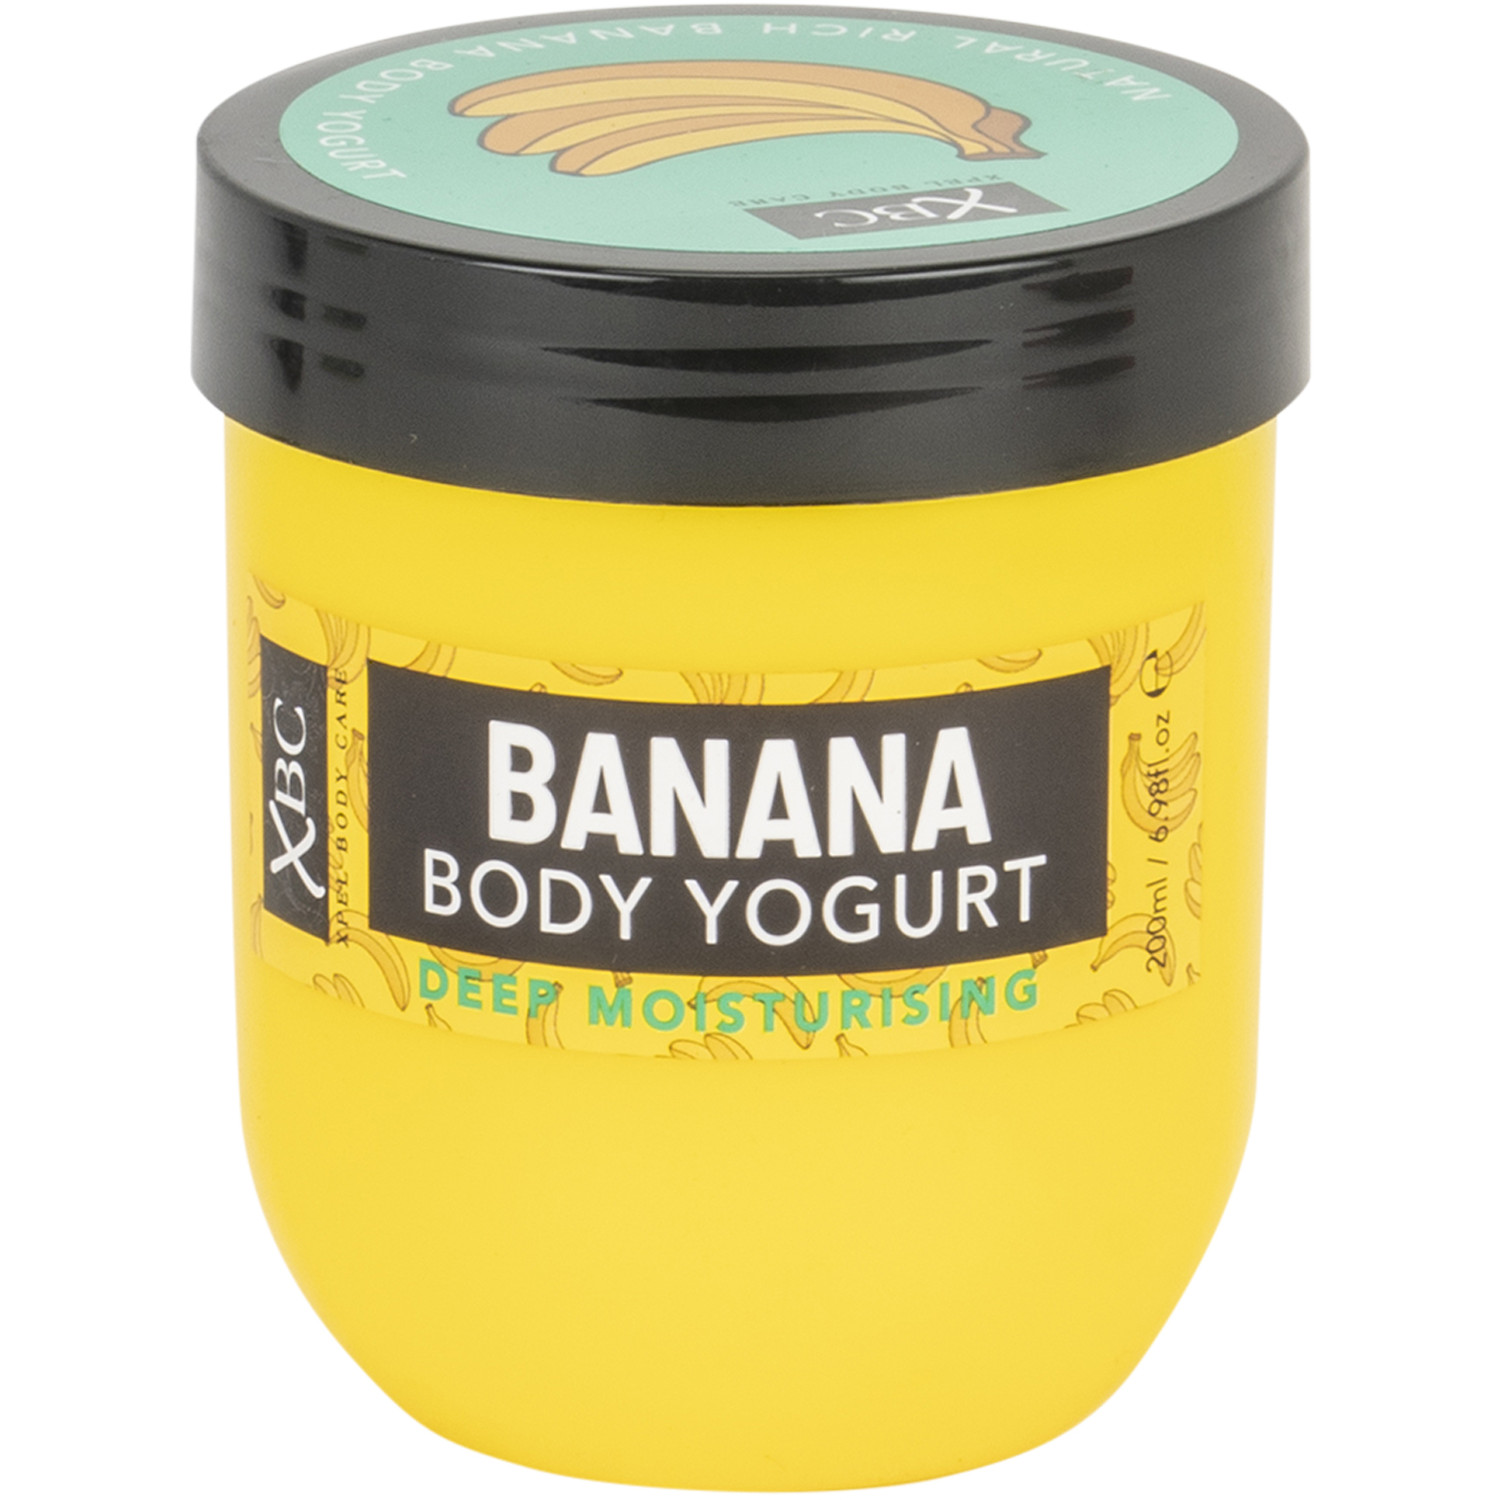 Body Yogurt - Banana Image